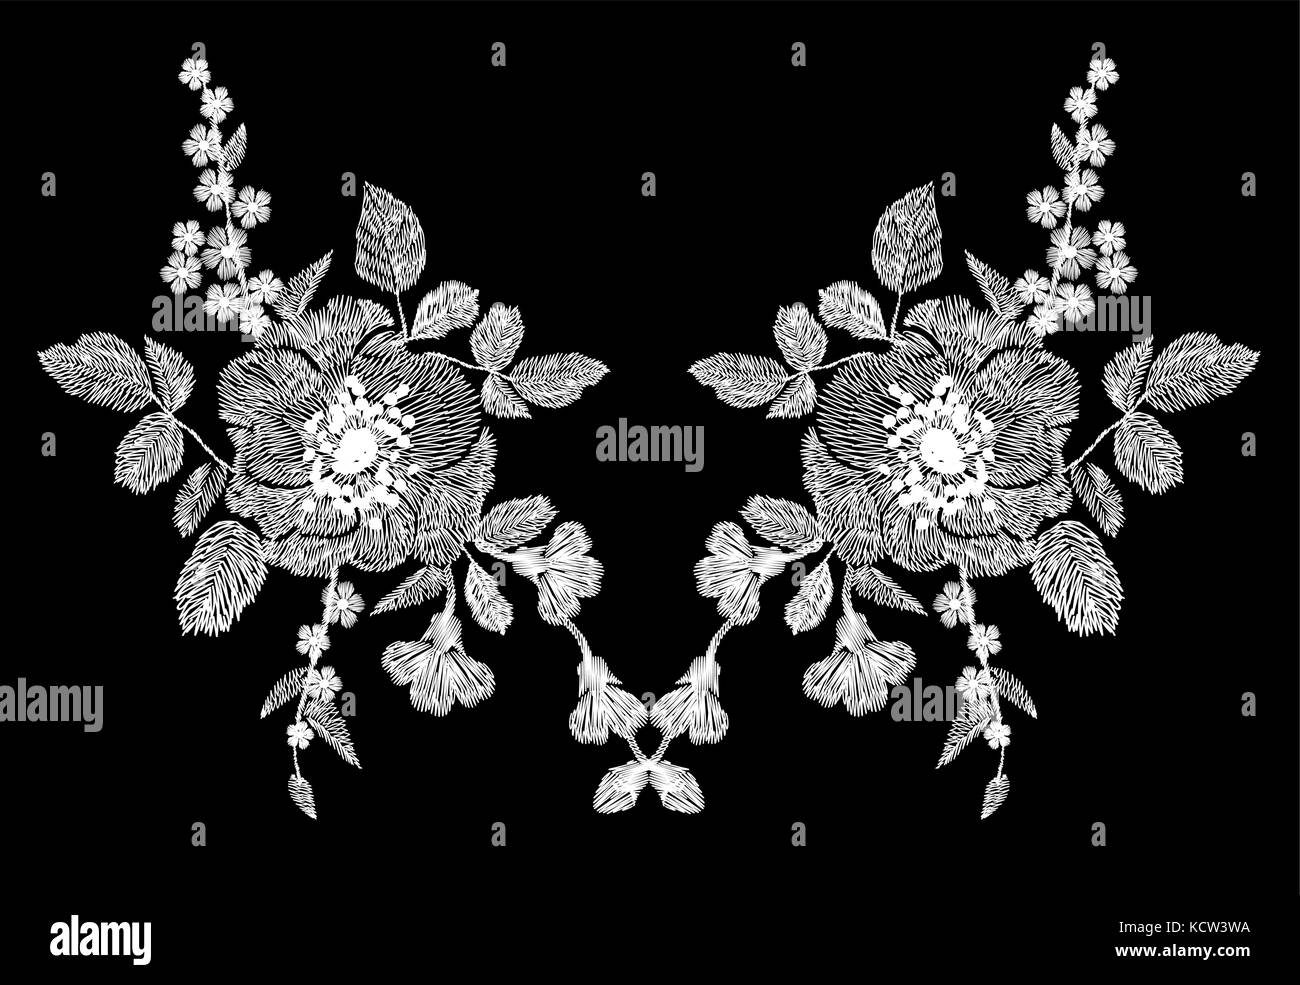 Blanc avec broderie motif floral de fleurs de pavot et daisy. vecteur de mode populaire traditionnelle ornement sur fond noir. illustration Illustration de Vecteur